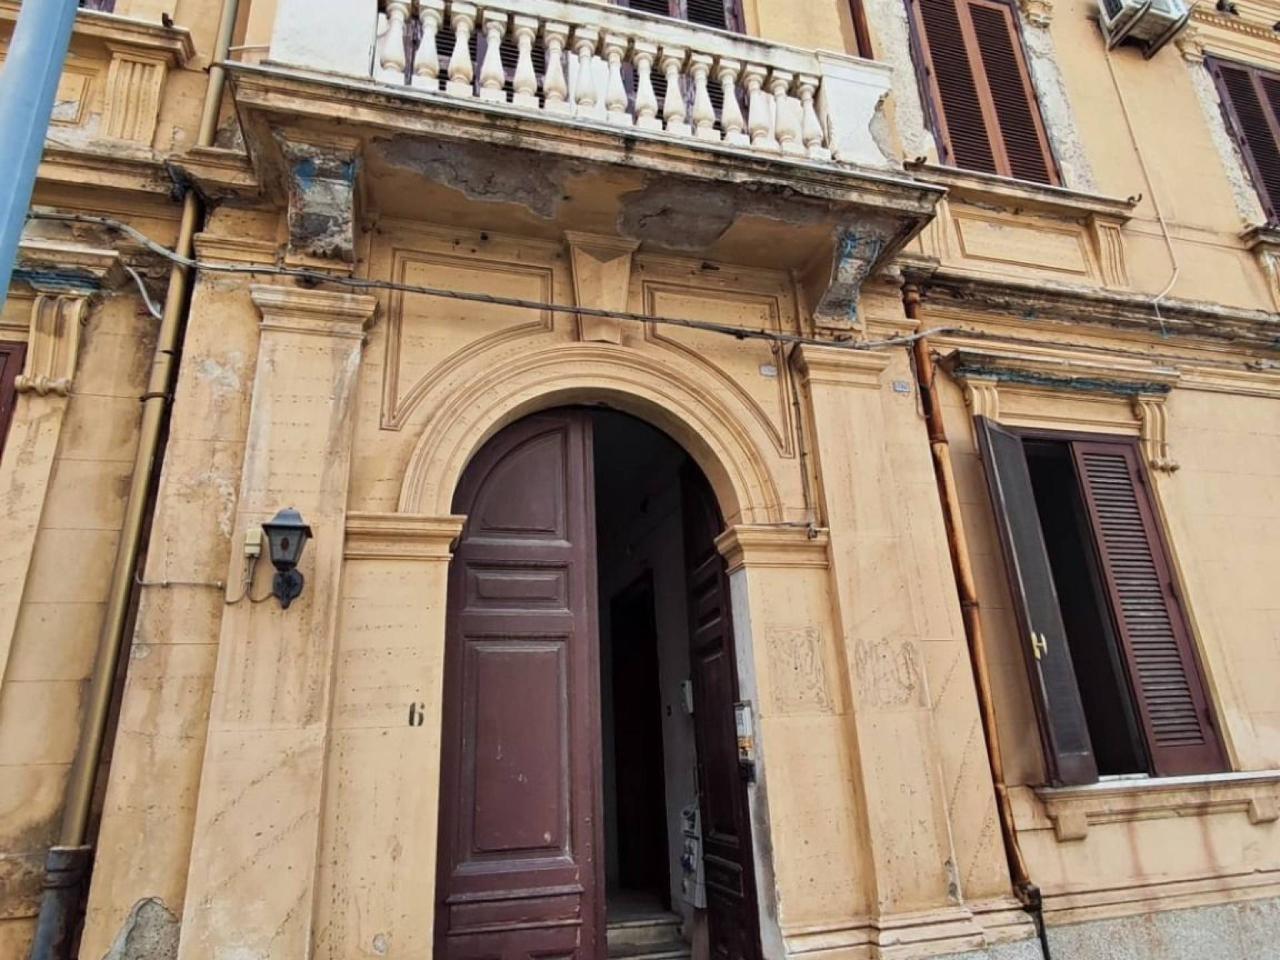 Ufficio condiviso in affitto a Reggio Calabria